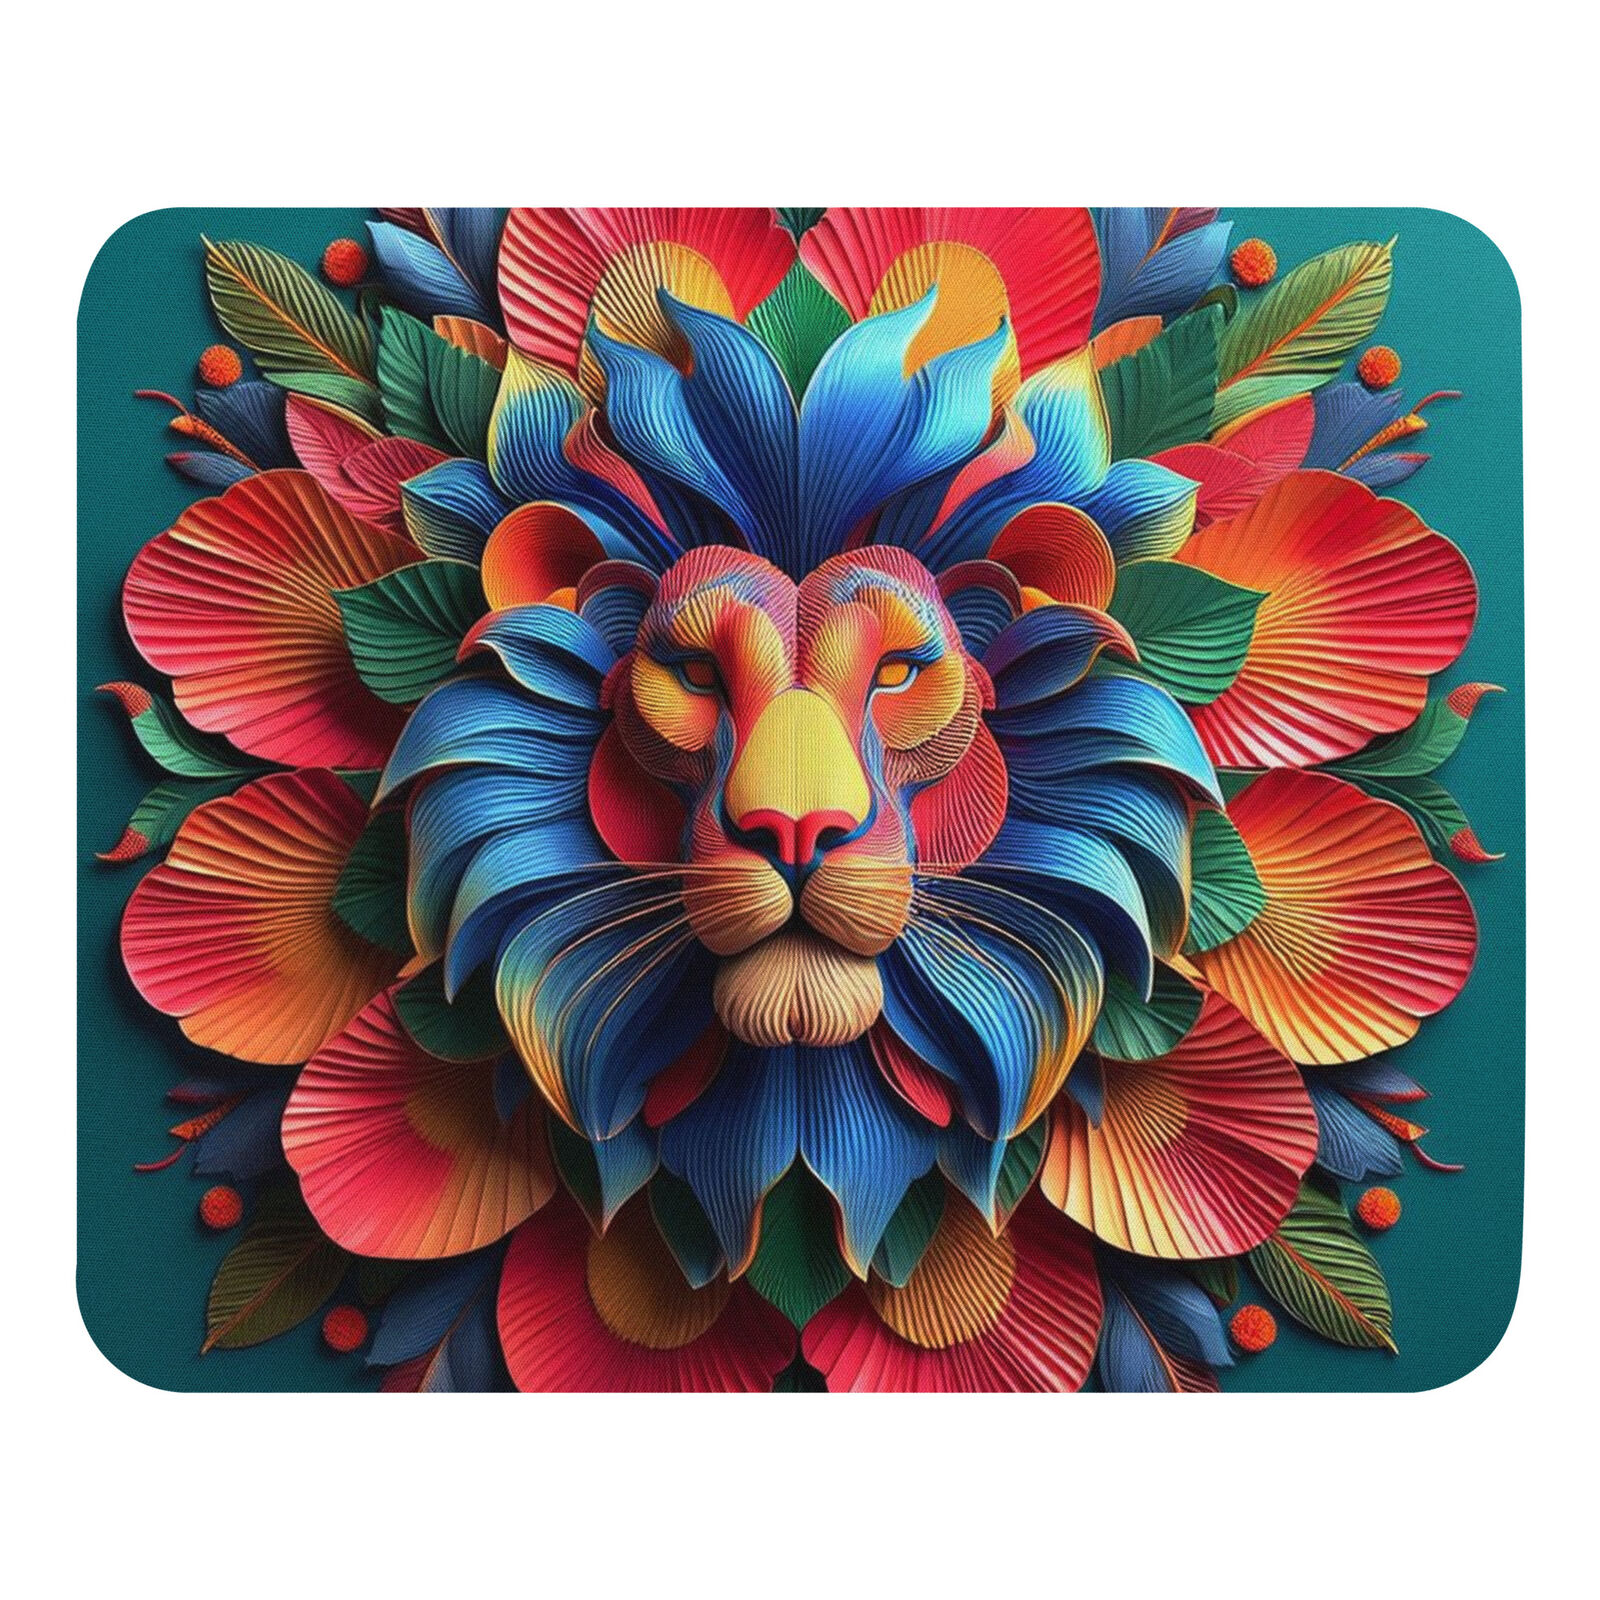 Lion Mouse Pad